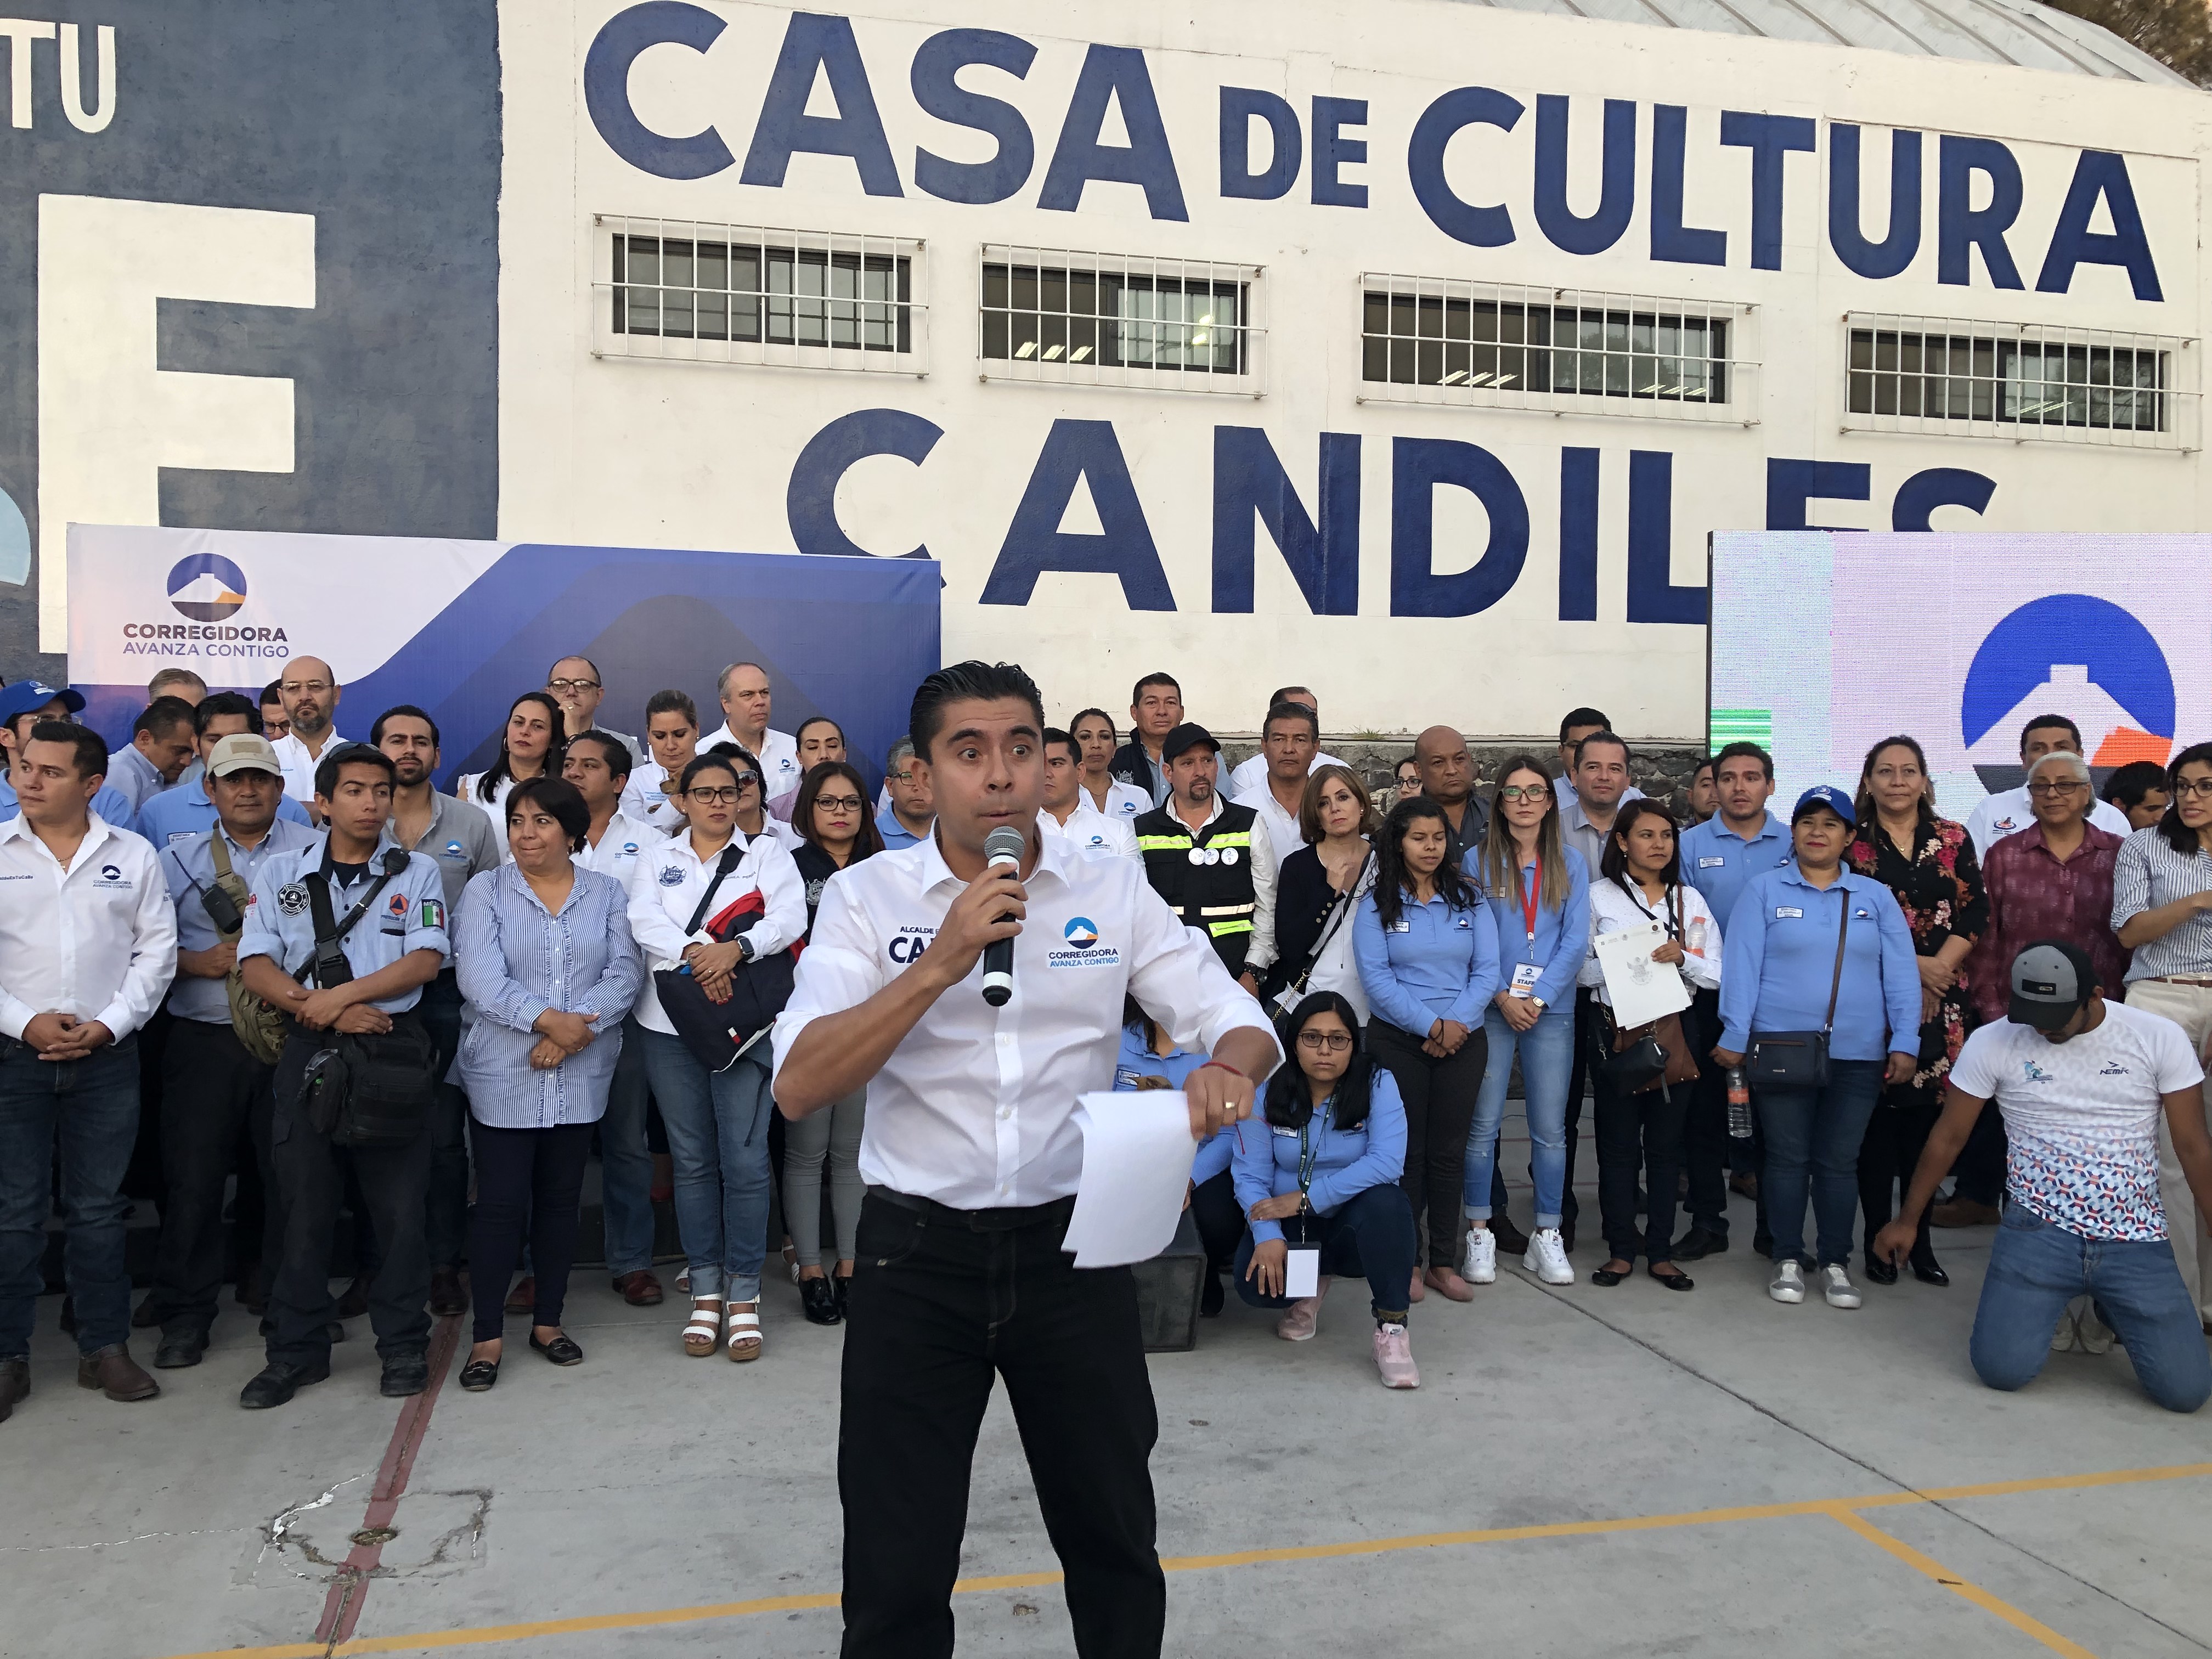  Sosa Pichardo pide compromiso y colaboración a vecinos de Candiles